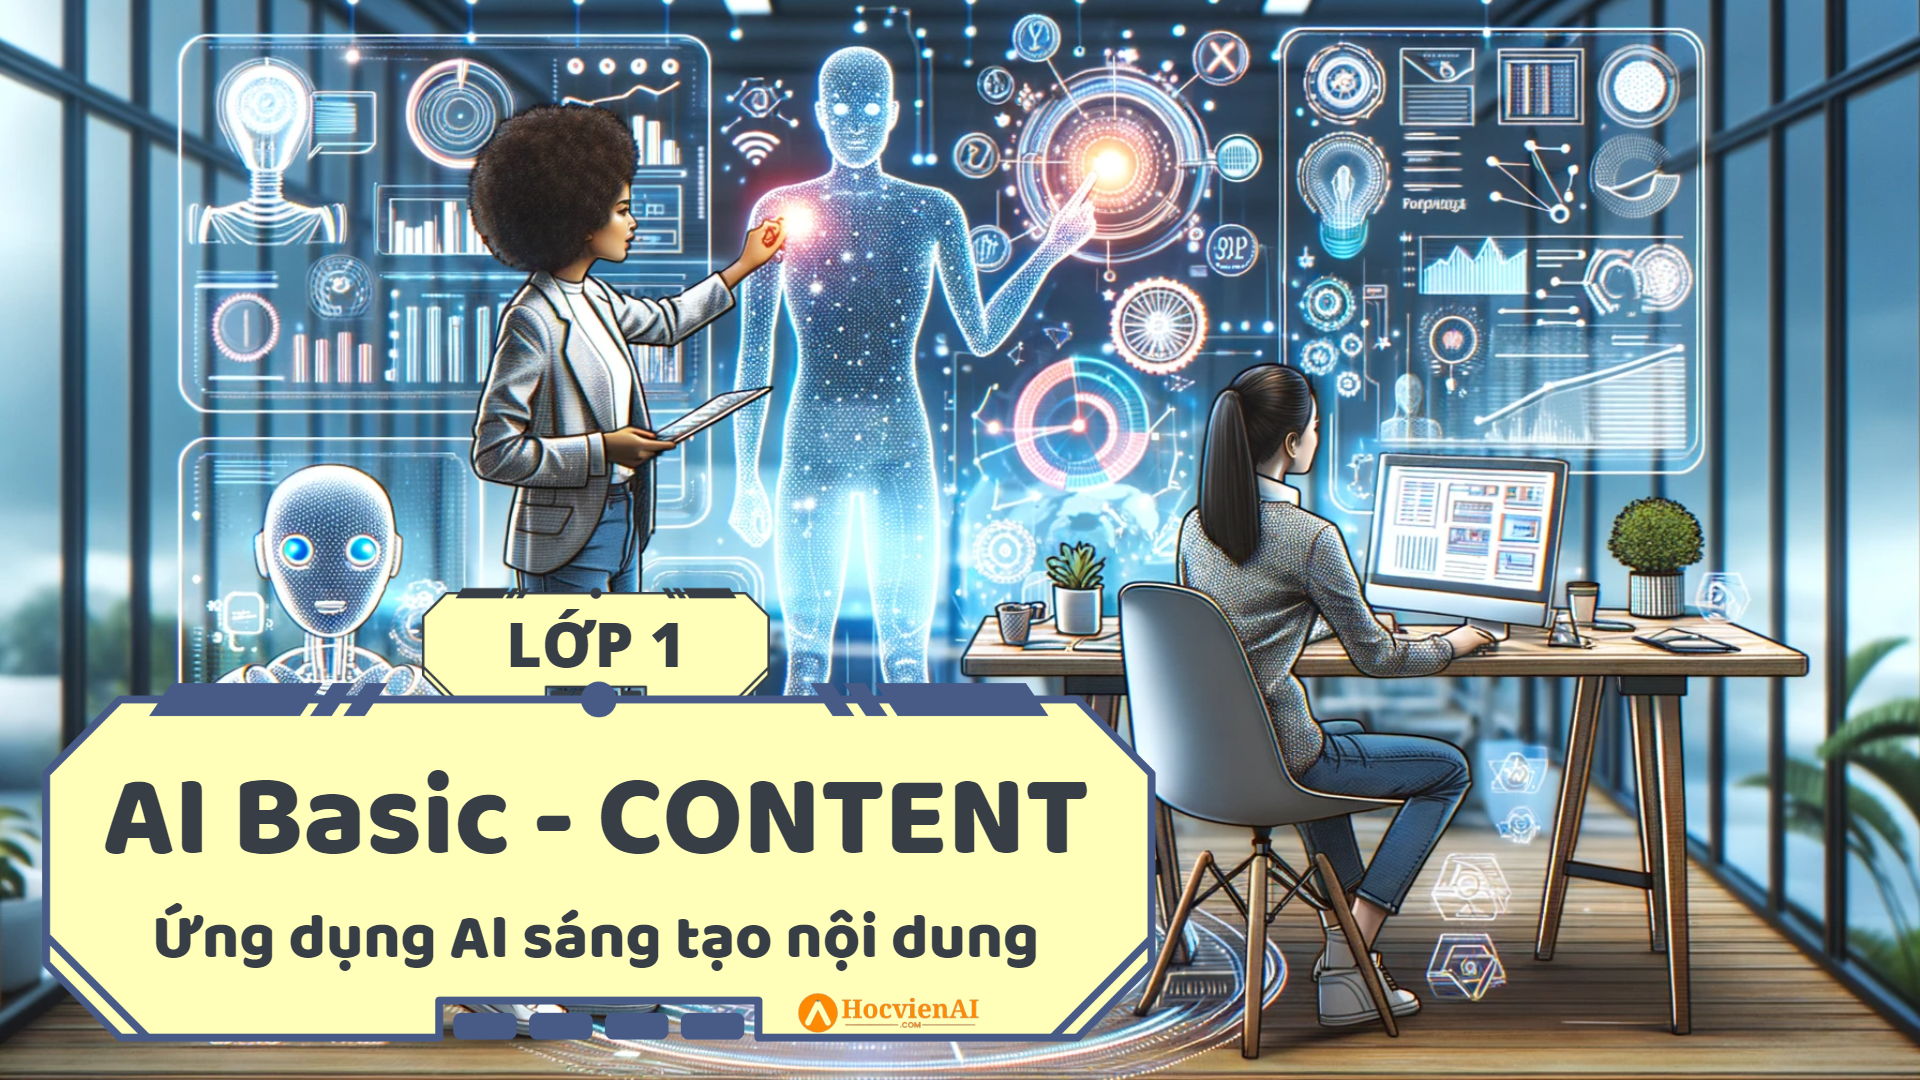 AI Basic Content - Sáng tạo nội dung truyền thông với AIVA